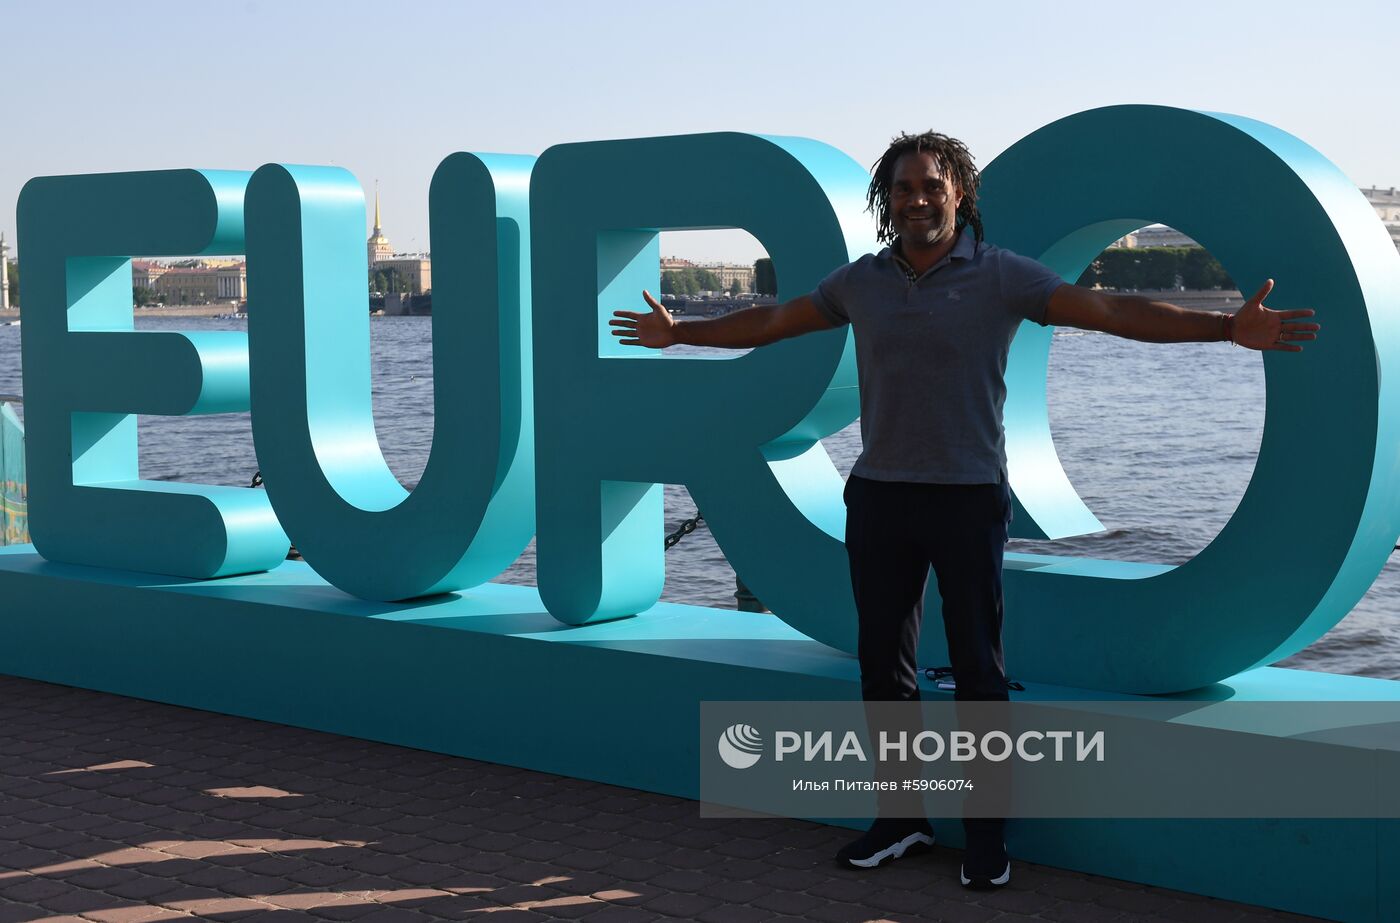 Открытие парка футбола "Евро-2020" в Санкт-Петербурге 